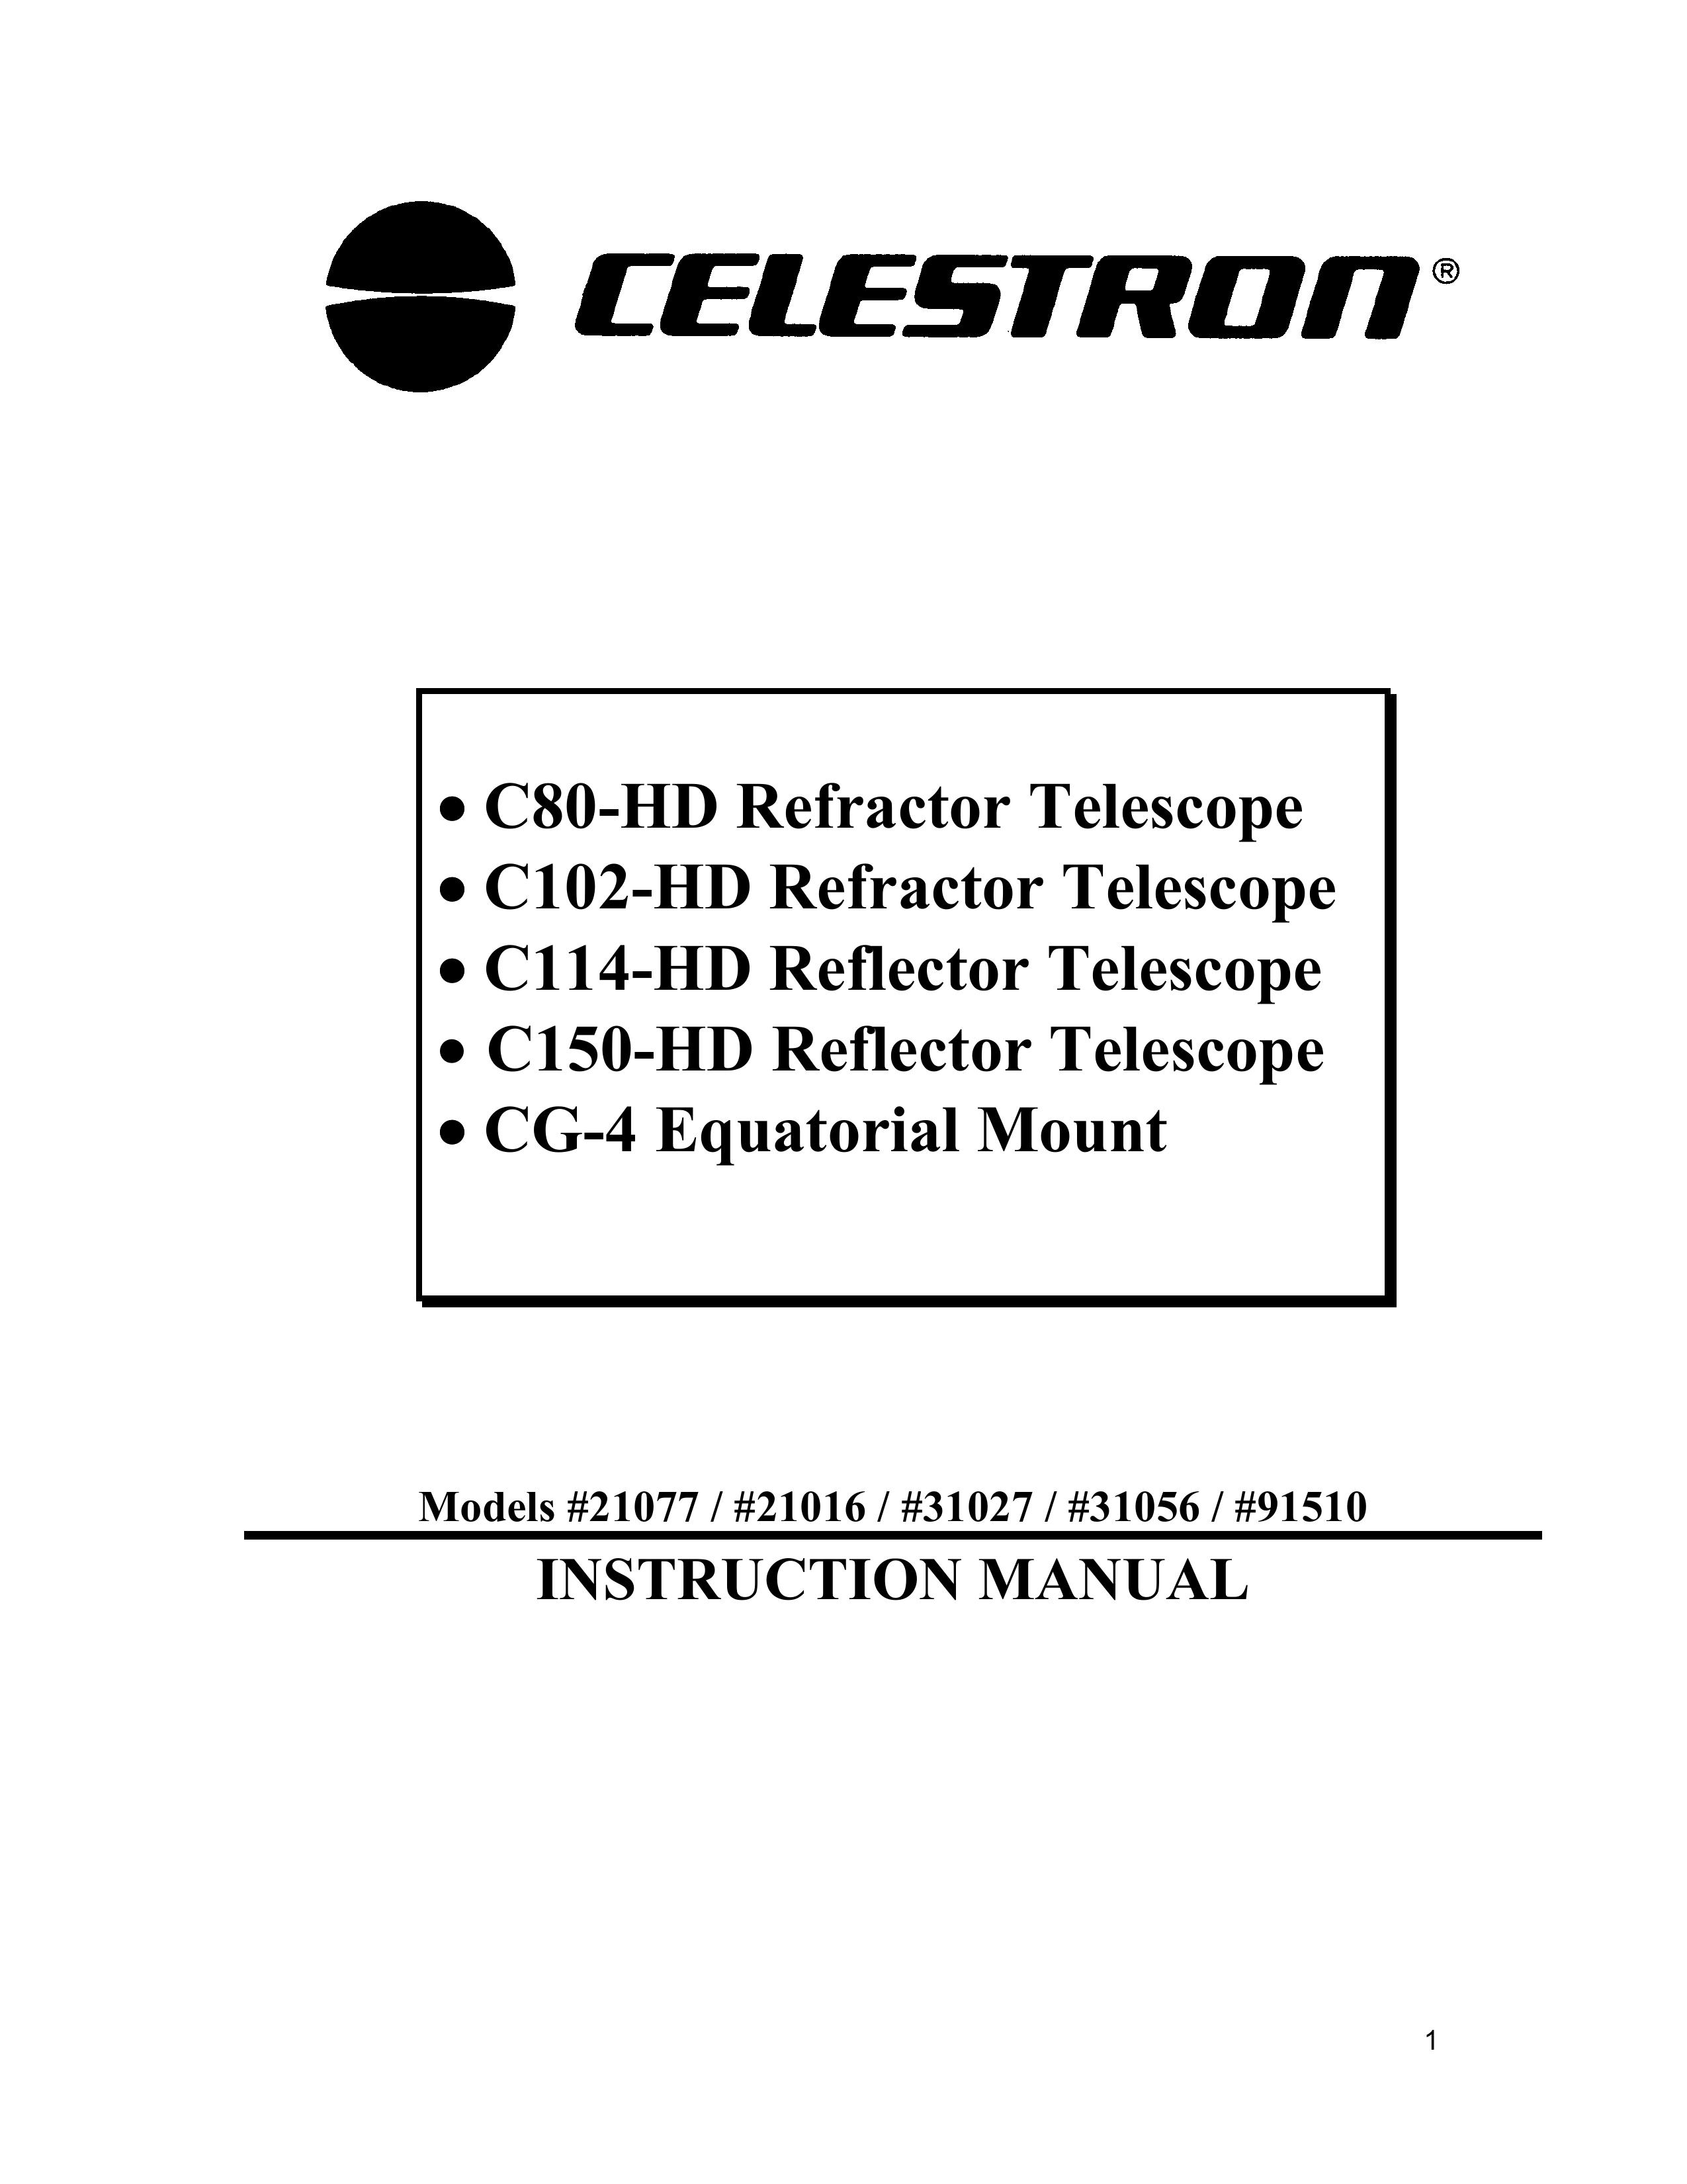 Celestron 31027 Telescope User Manual